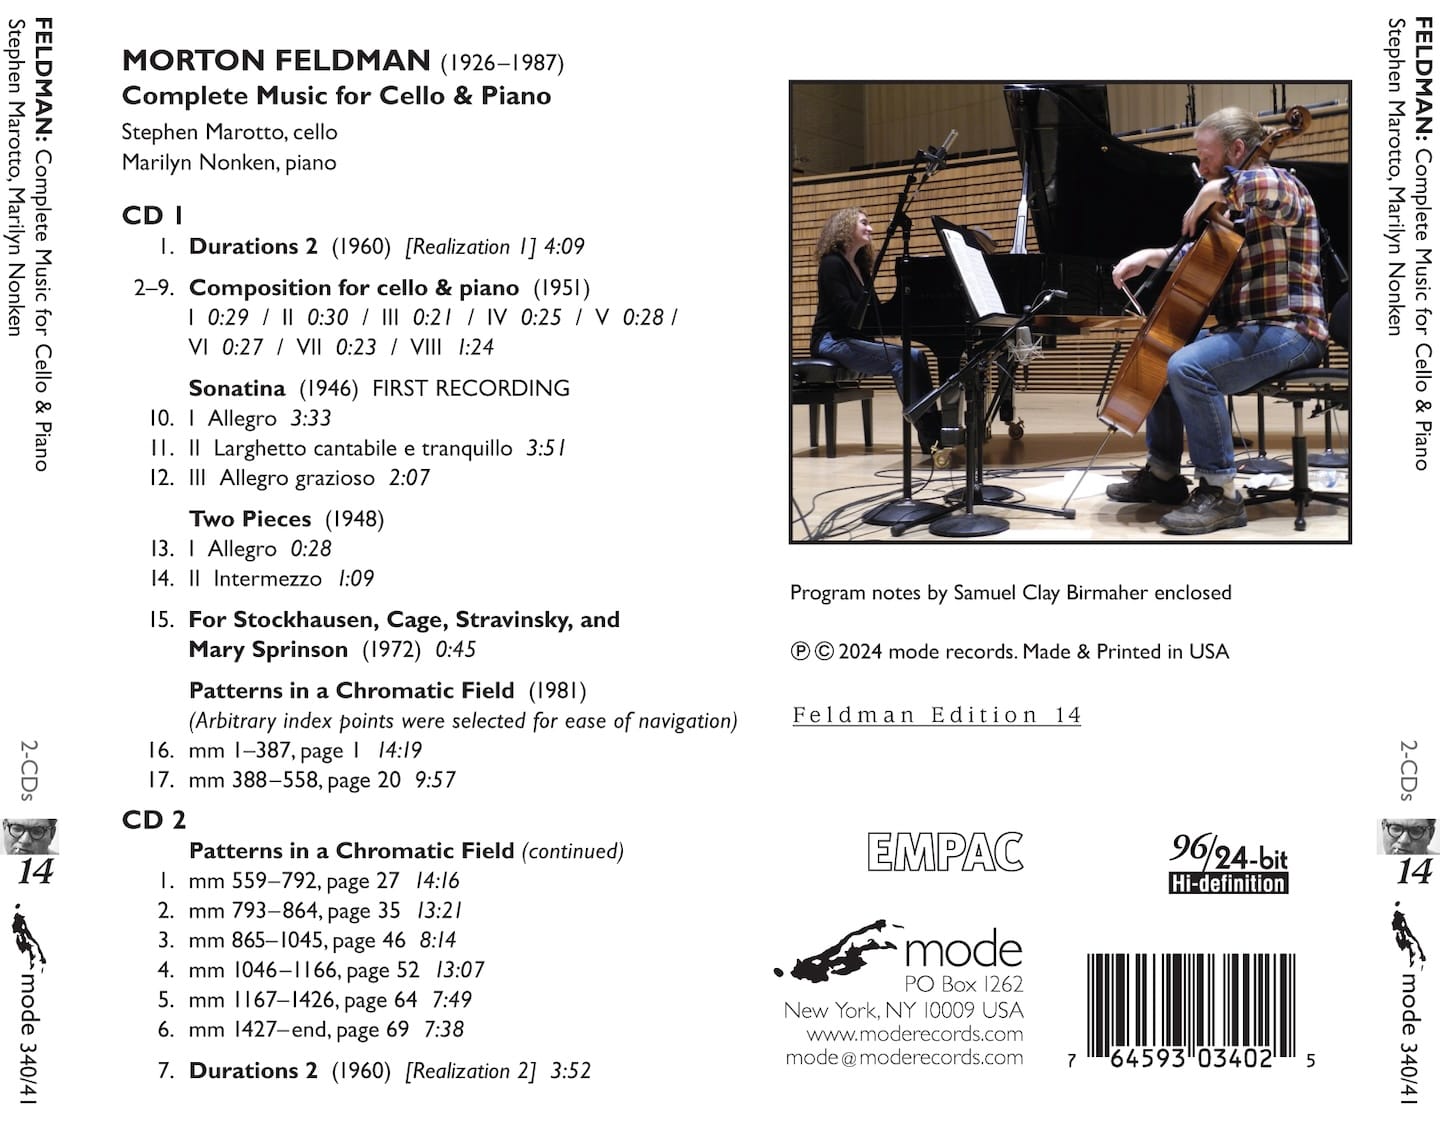 Complete Music for Cello & Piano